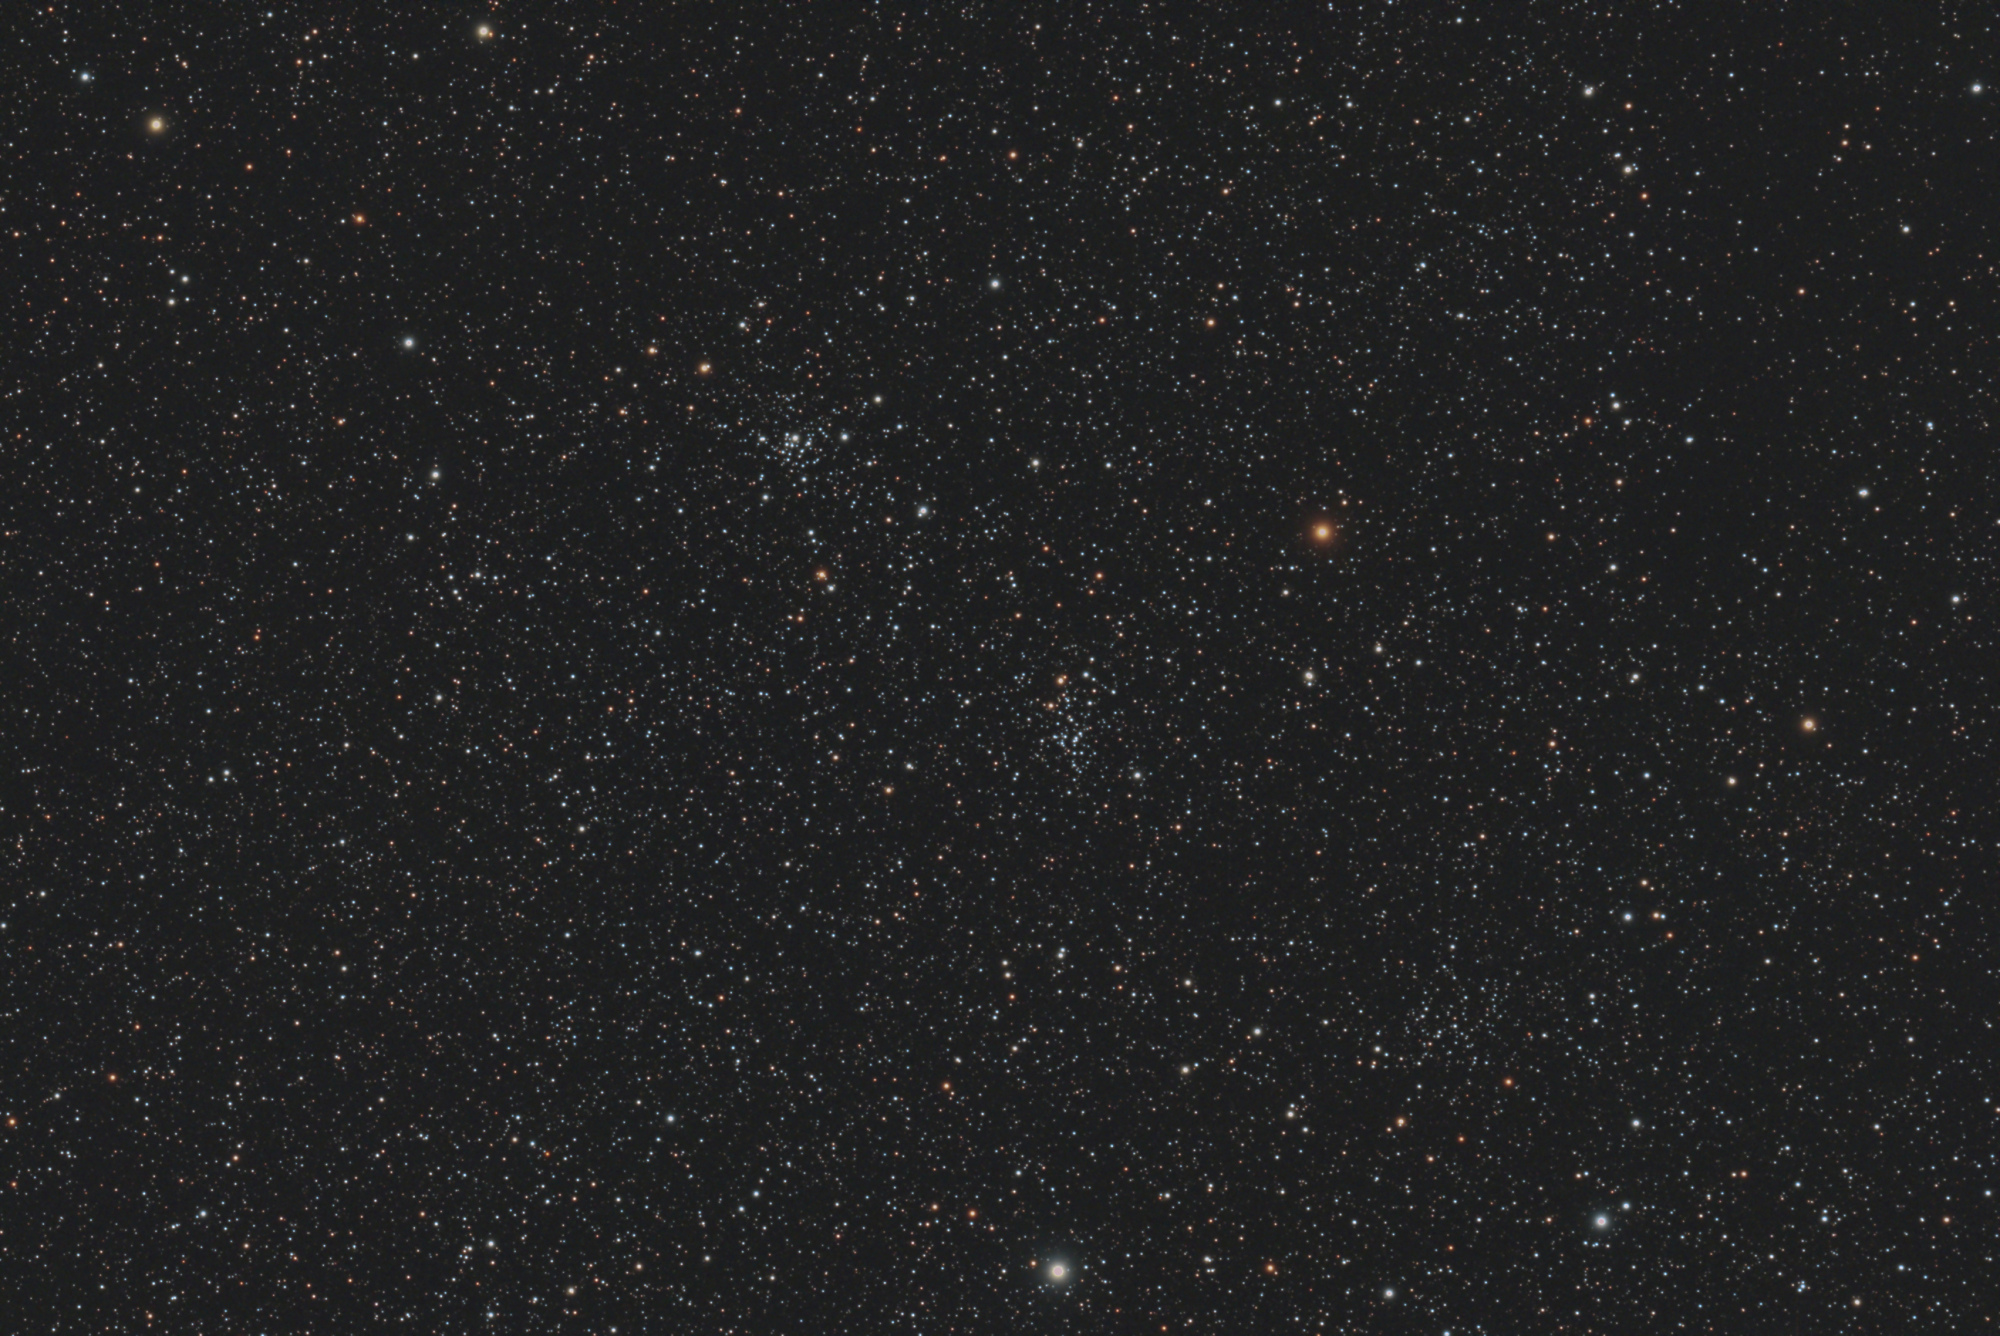 5ded3f8dd8852_NGC7790_NGC7788_2593x1732.thumb.jpg.6ec5d582840f90afc2862200d2f7c407.jpg